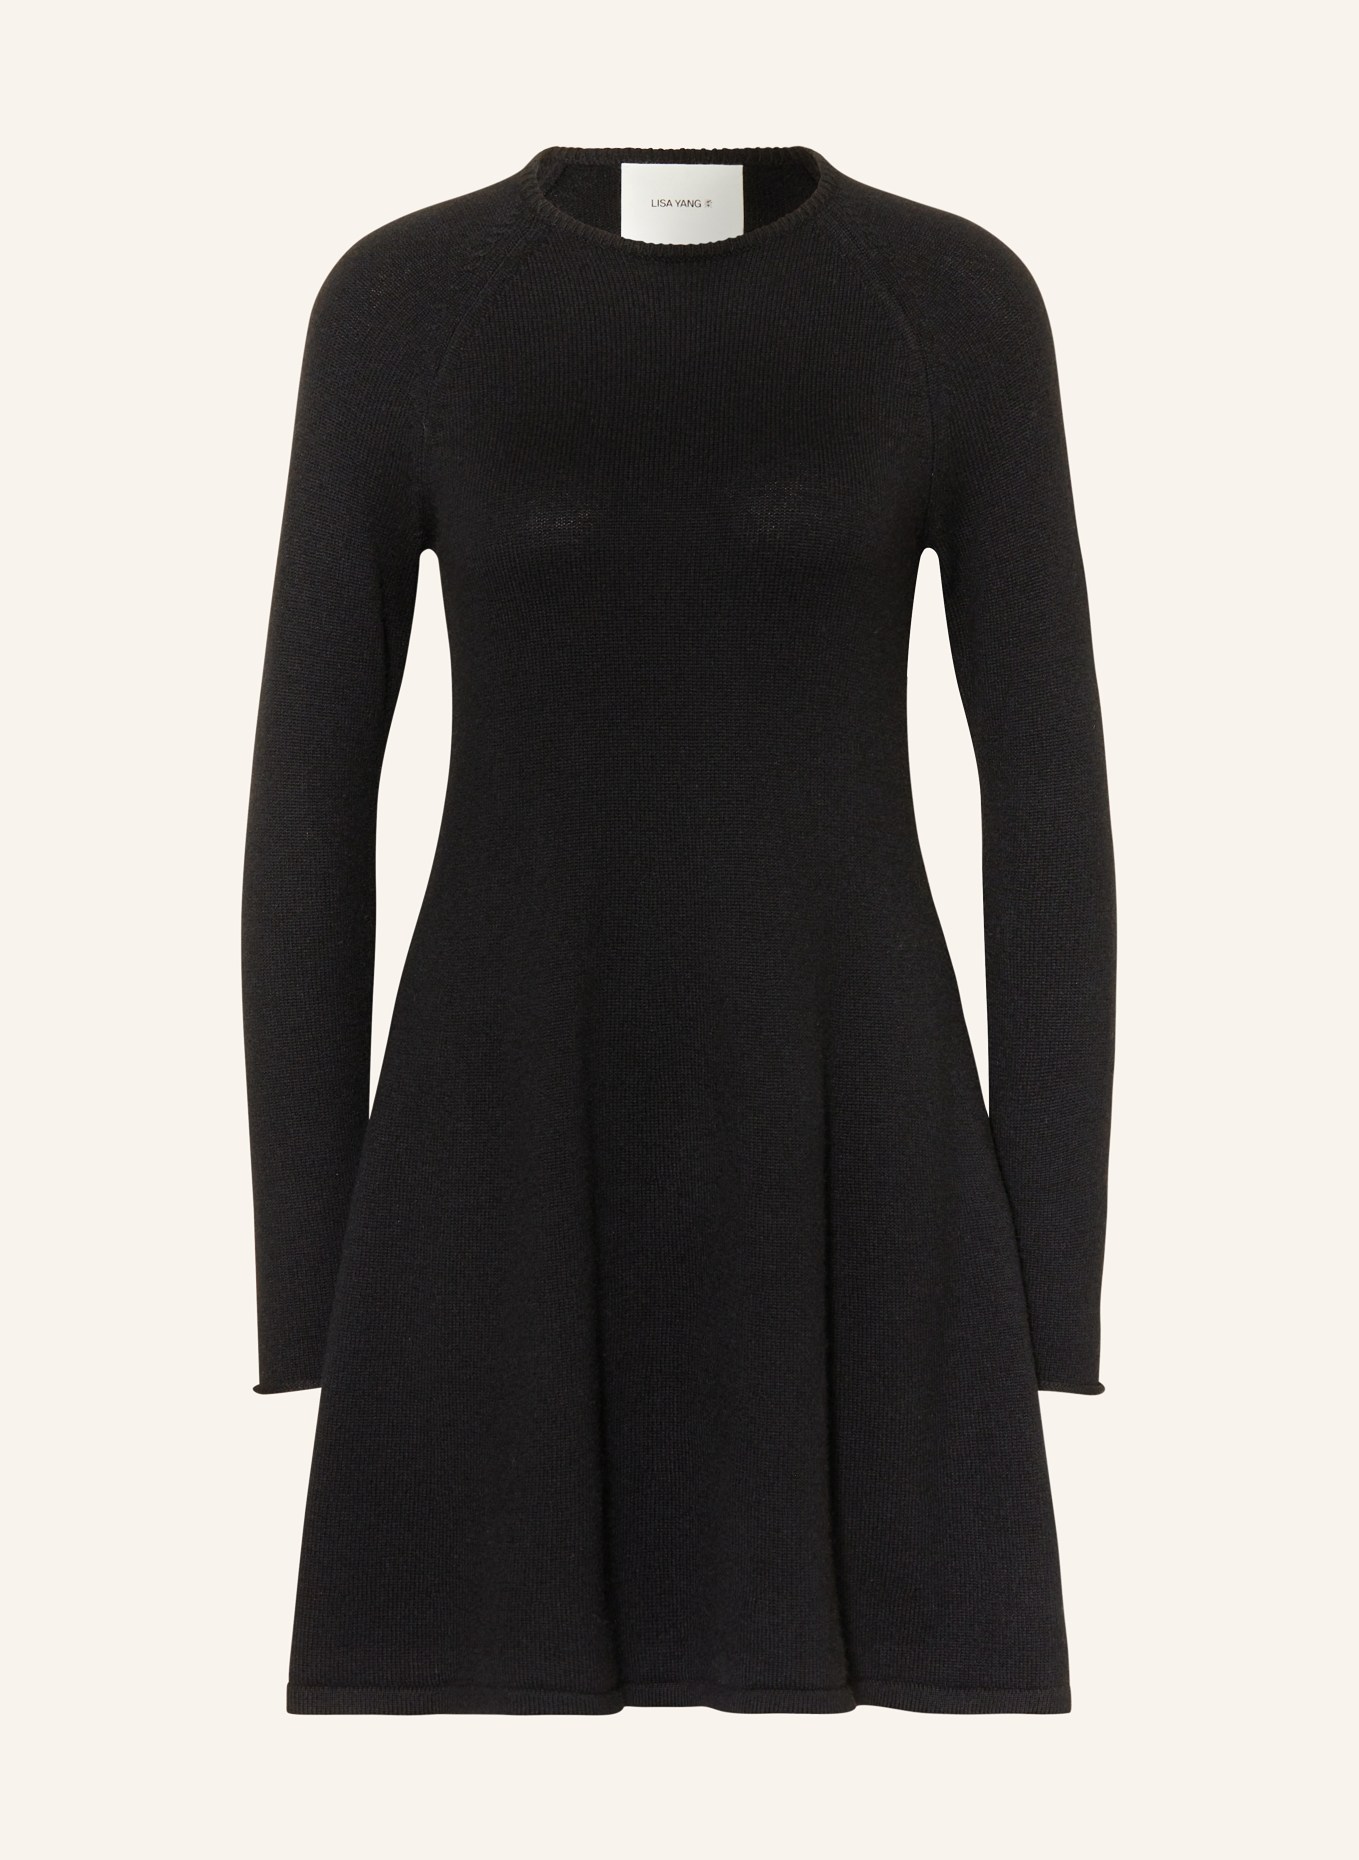 LISA YANG Cashmere knit dress, Color: BLACK (Image 1)